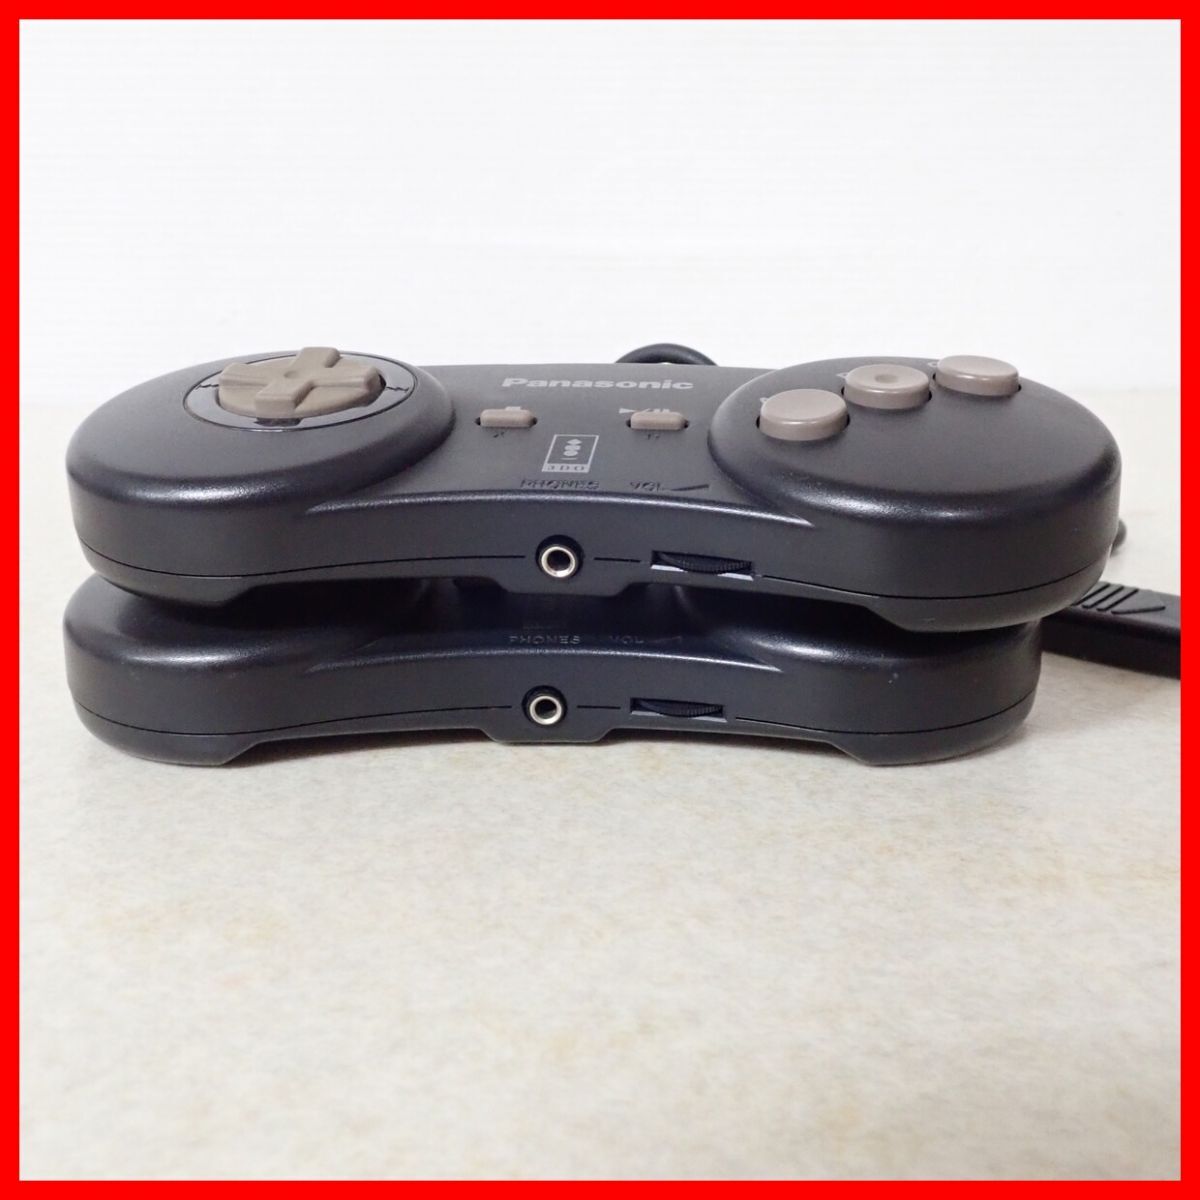 3DO controller FZ-JP1X control pad together 2 piece set Panasonic Panasonic Junk [10